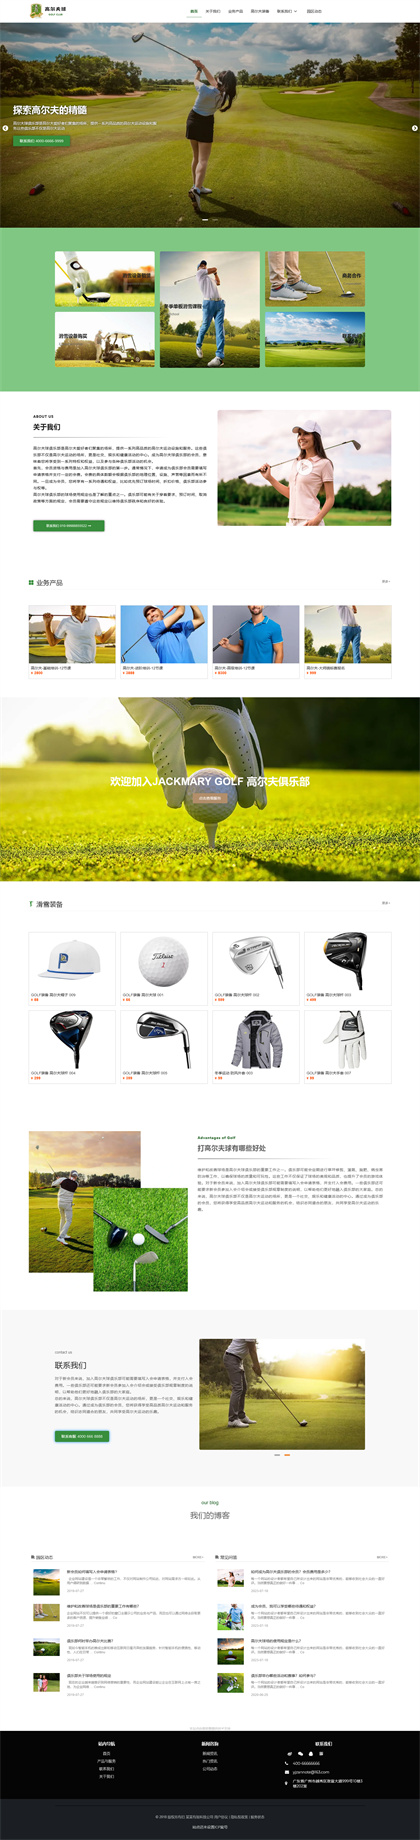 高尔夫球场-GOLF CLUB-高尔夫俱乐部-高尔夫球会-高尔夫度假村-网站模板网站模板图片